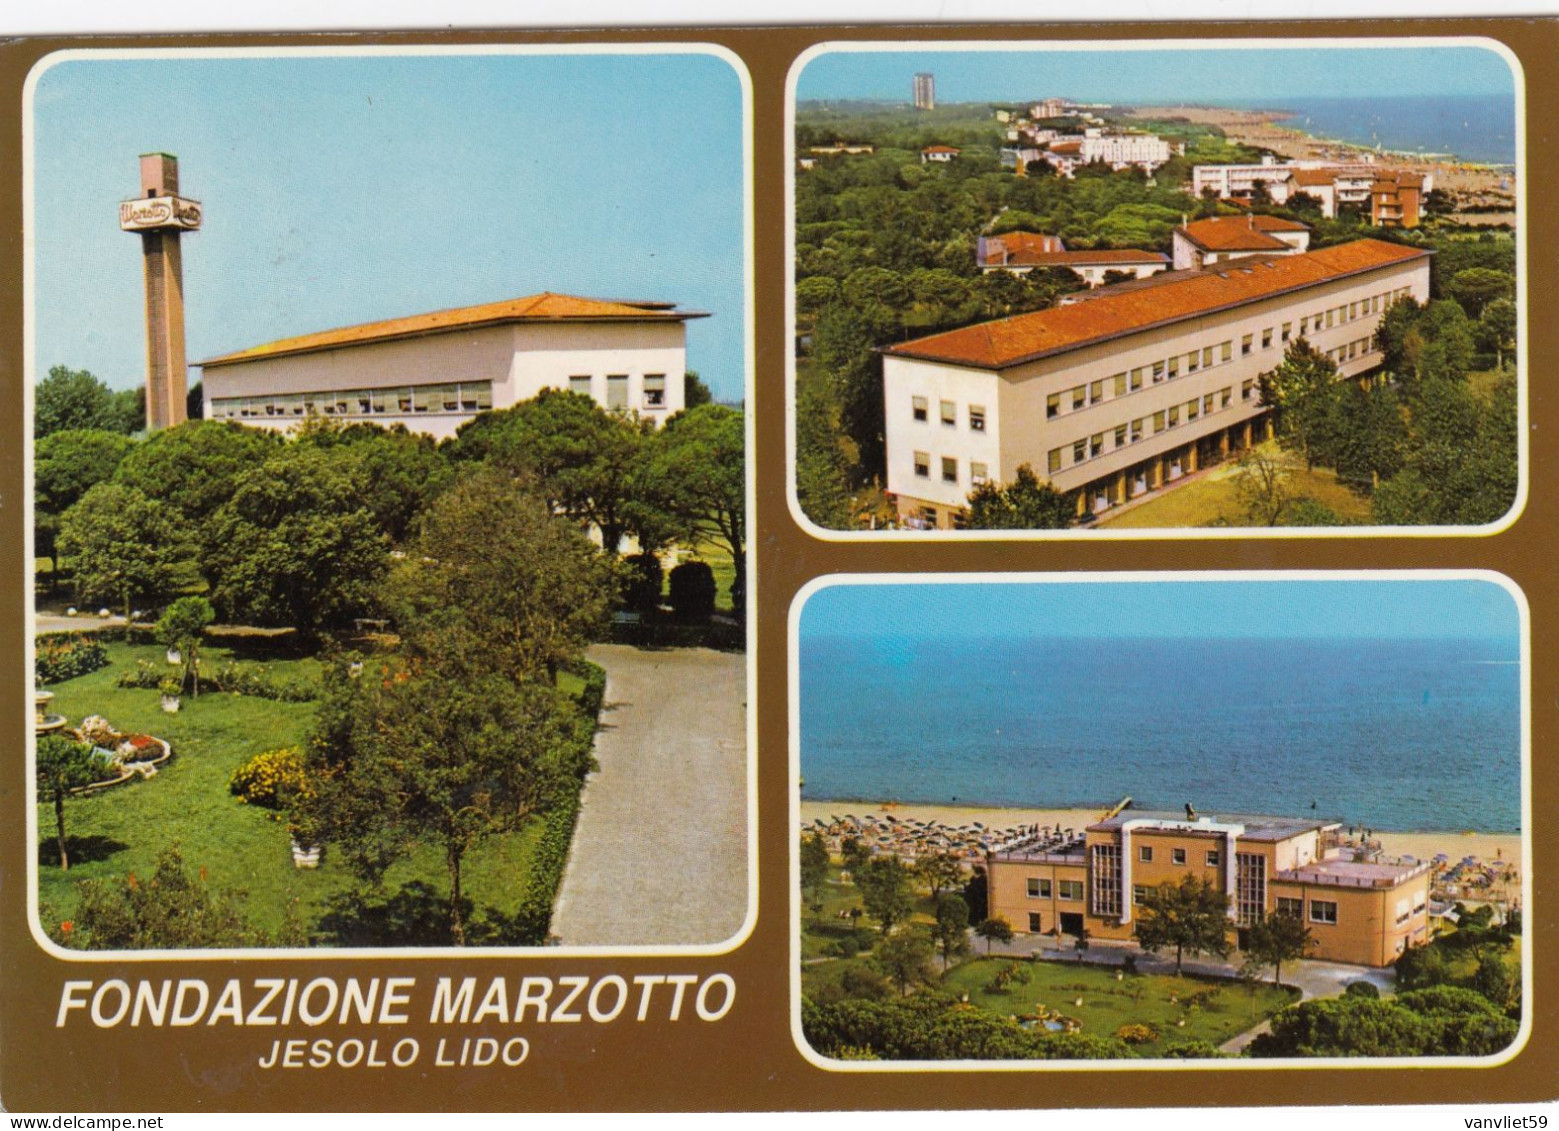 JESOLO LIDO-VENEZIA-FONDAZIONE MARZOTTO-MULTIVEDUTE-CARTOLINA VERA FOTOGRAFIA-VIAGGIATA IL 29-7-1983 - Venezia (Venice)